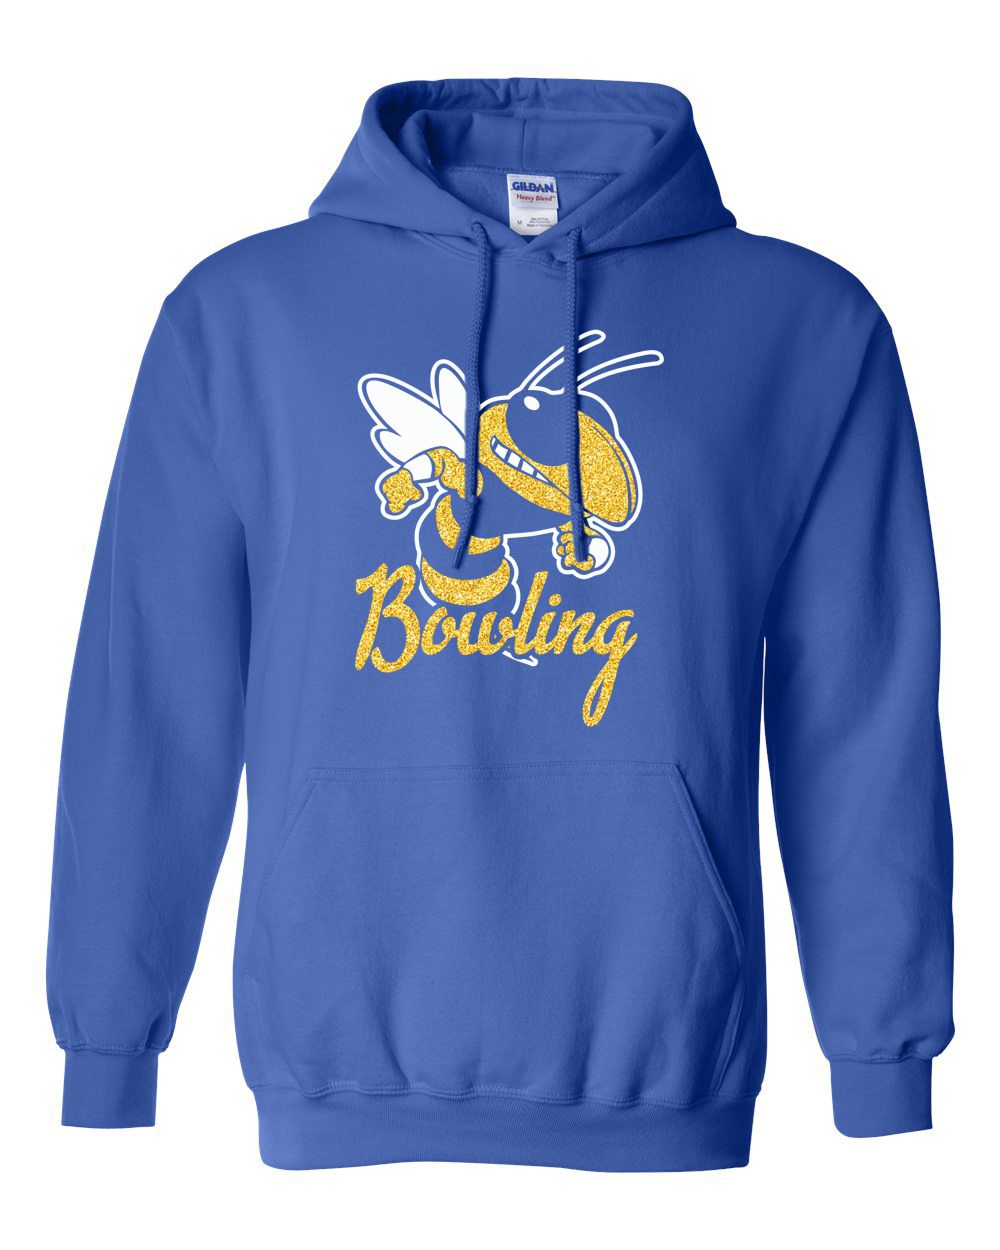 Kearsley Bowling Glitter Hooded Sweatshirt